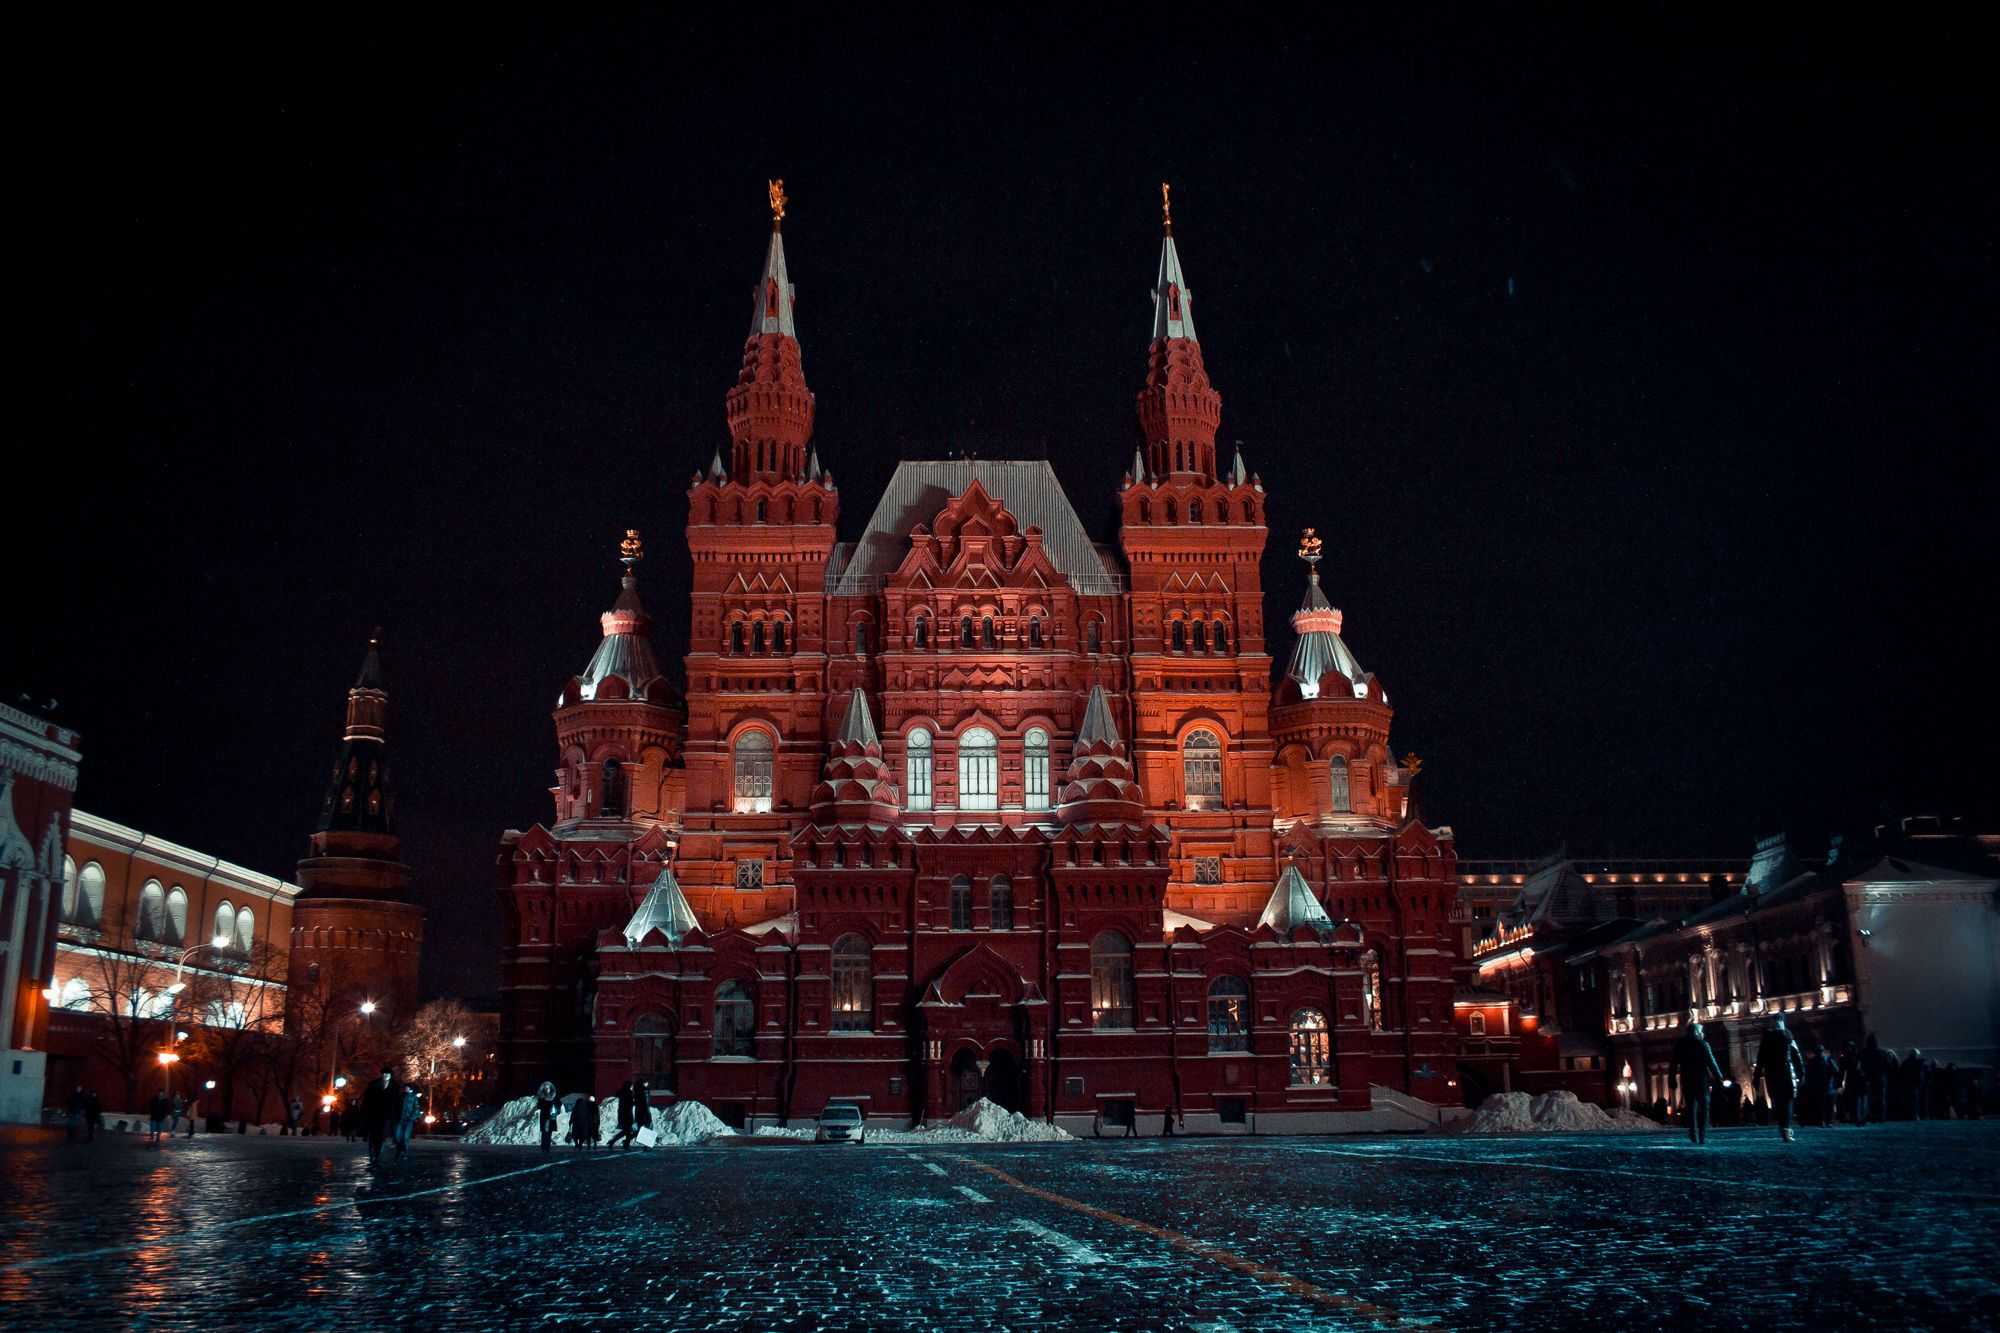 Музеи москвы на красной площади